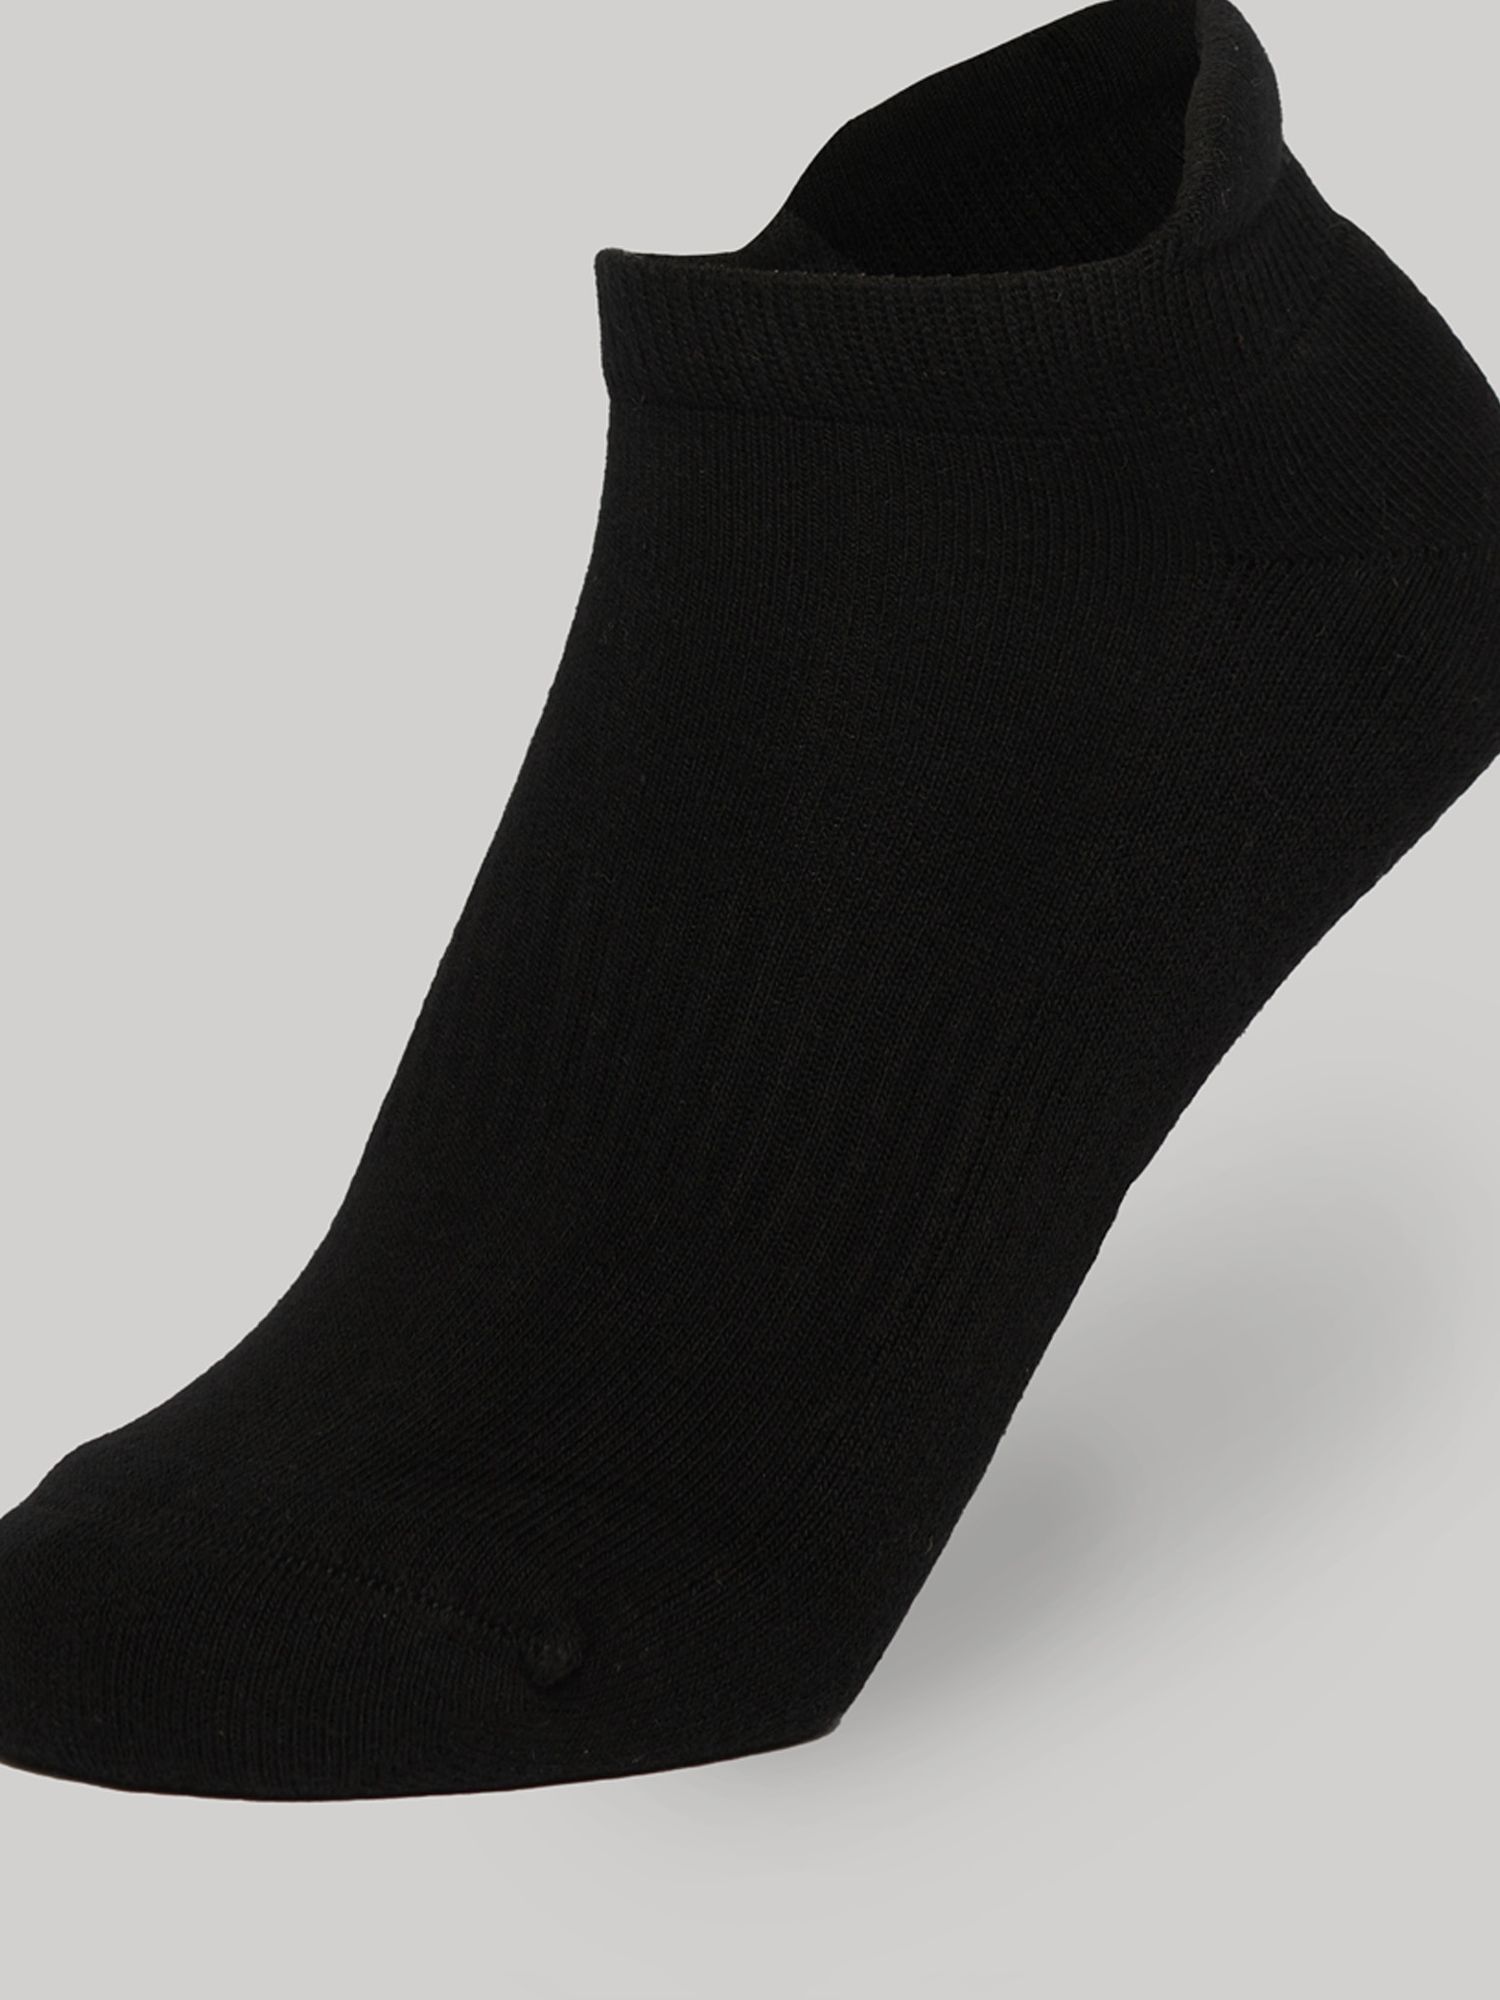 Buy Superdry Trainer Socks, Pack of 3, Black Online at johnlewis.com